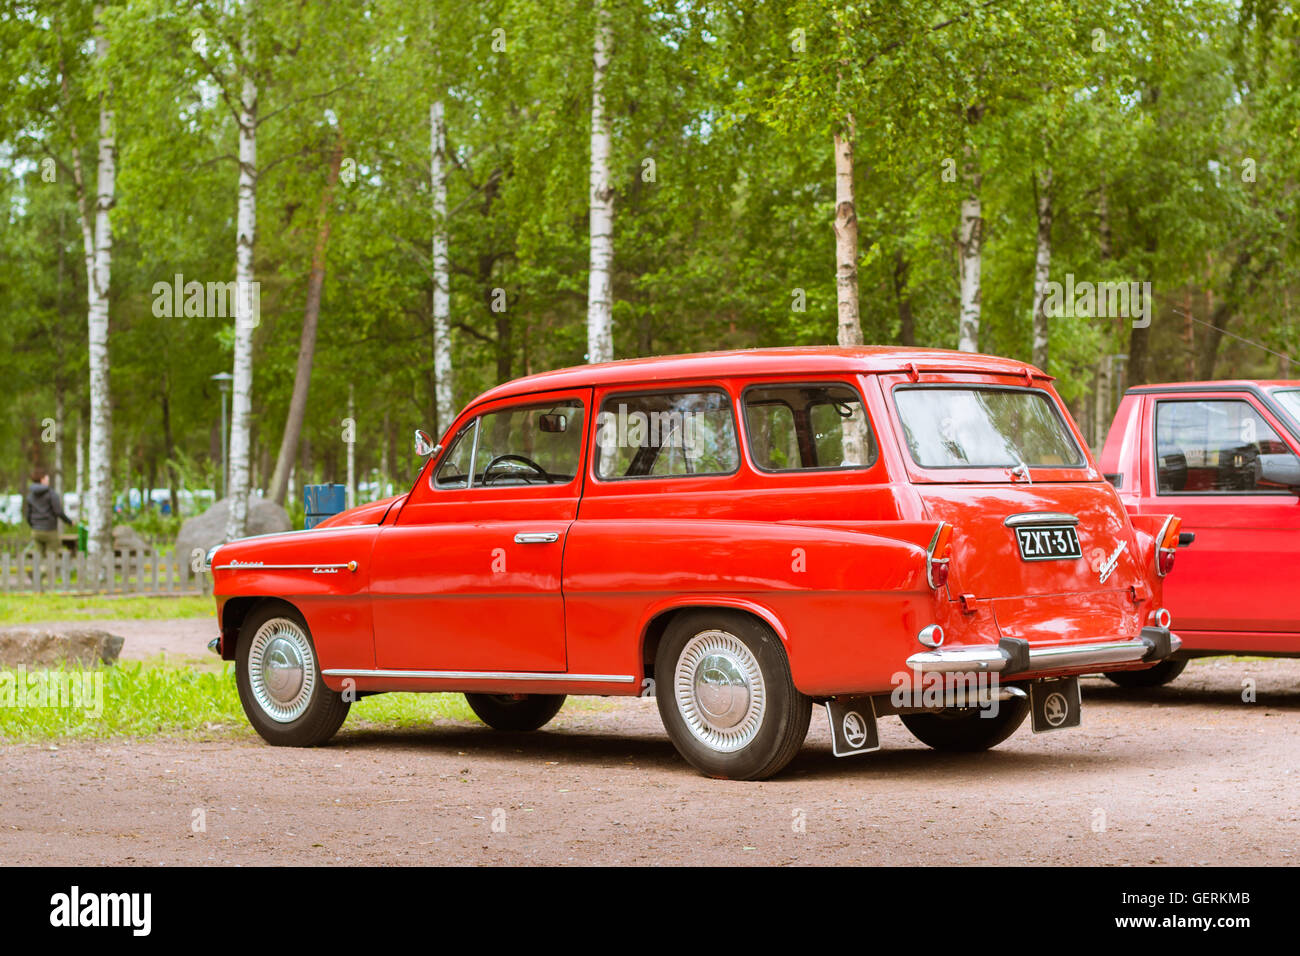 KOTKA, Finnland - 14. Juni 2014: Rot Skoda Felicia Coupé-Wagen geparkt am Ufer des finnischen Golf. Festival und Ausstellung Stockfoto